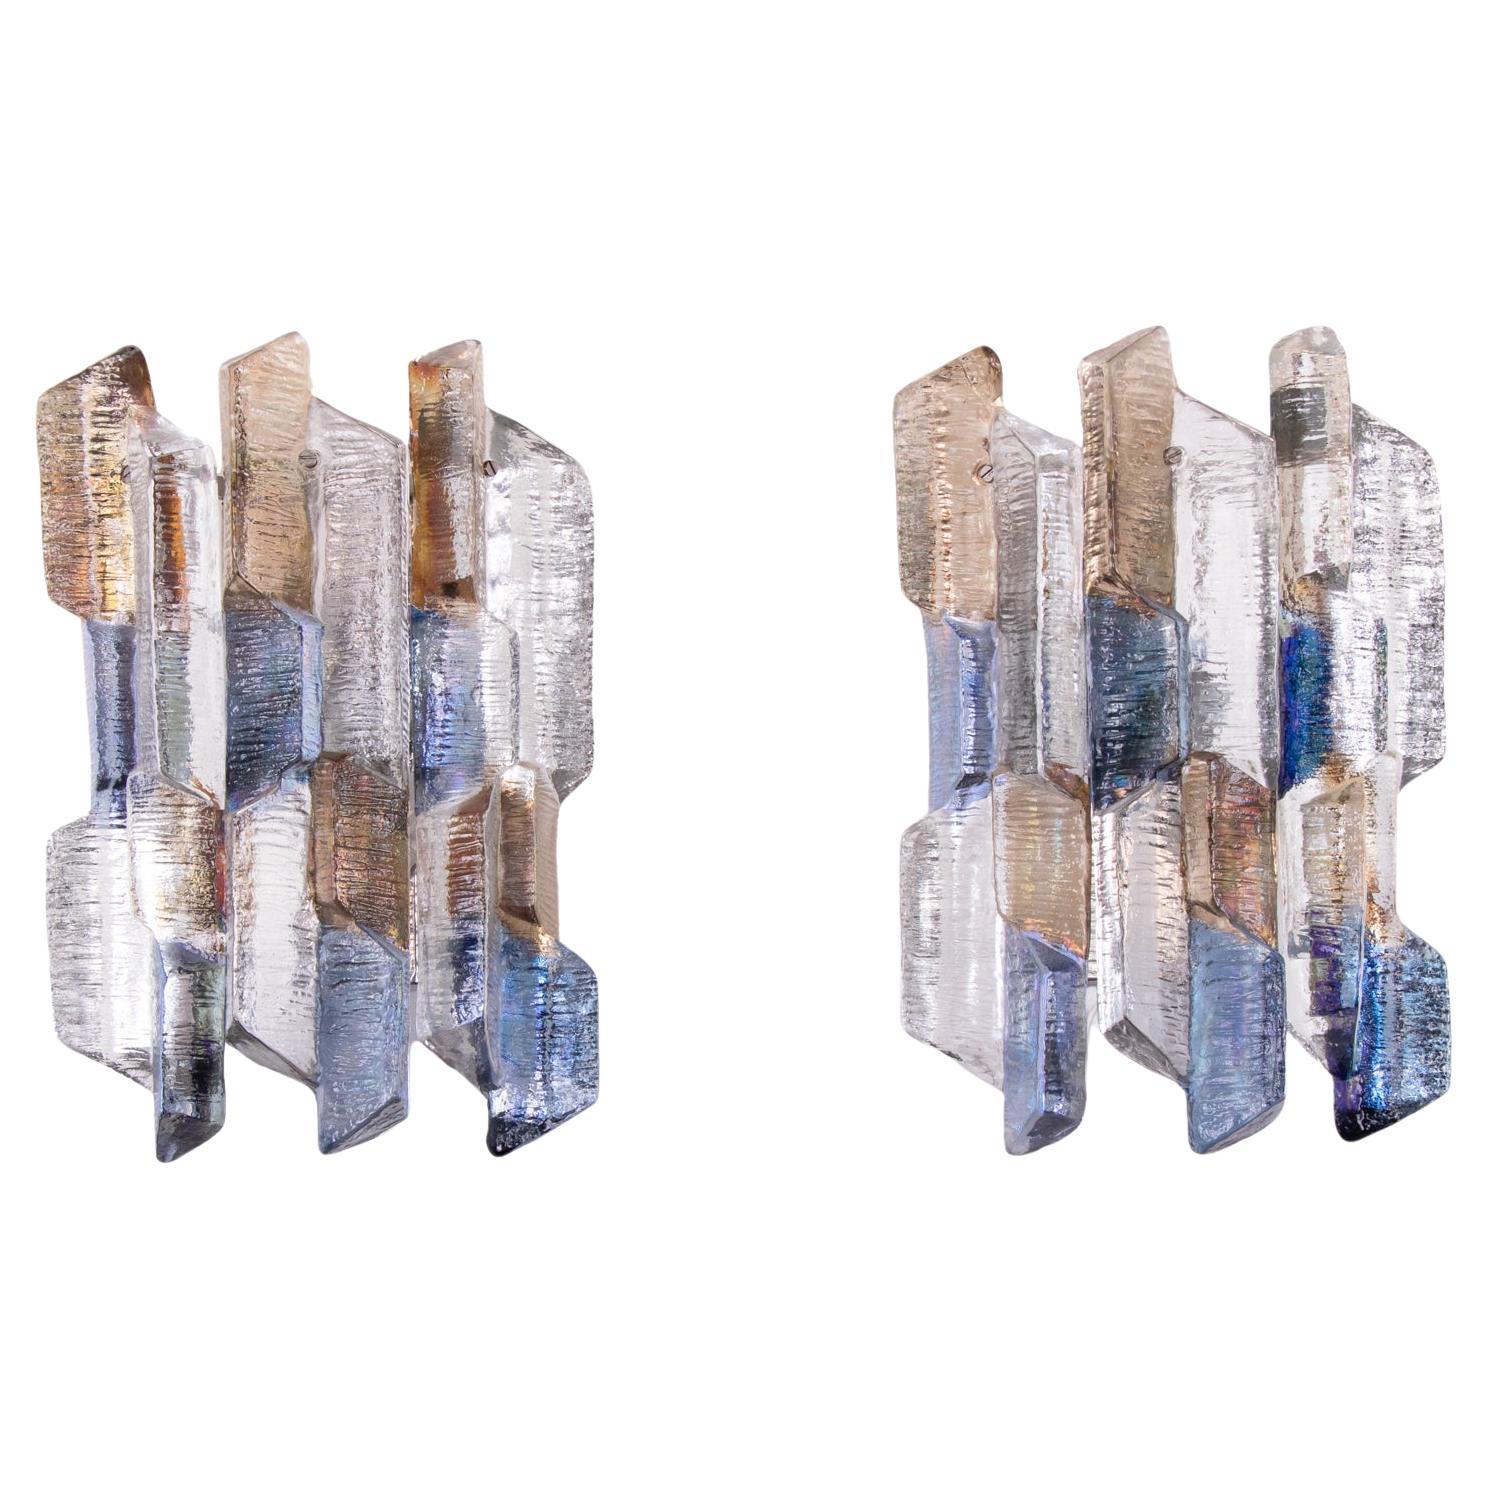 Elegantes Paar mehrfarbiger Wandleuchten aus Murano-Glas, entworfen von J.T. Kalmar besteht aus sechs strukturierten, klaren Glaselementen mit blauer, bernsteinfarbener und klarer Tönung, die auf einer vernickelten Rückwand aufgehängt sind.